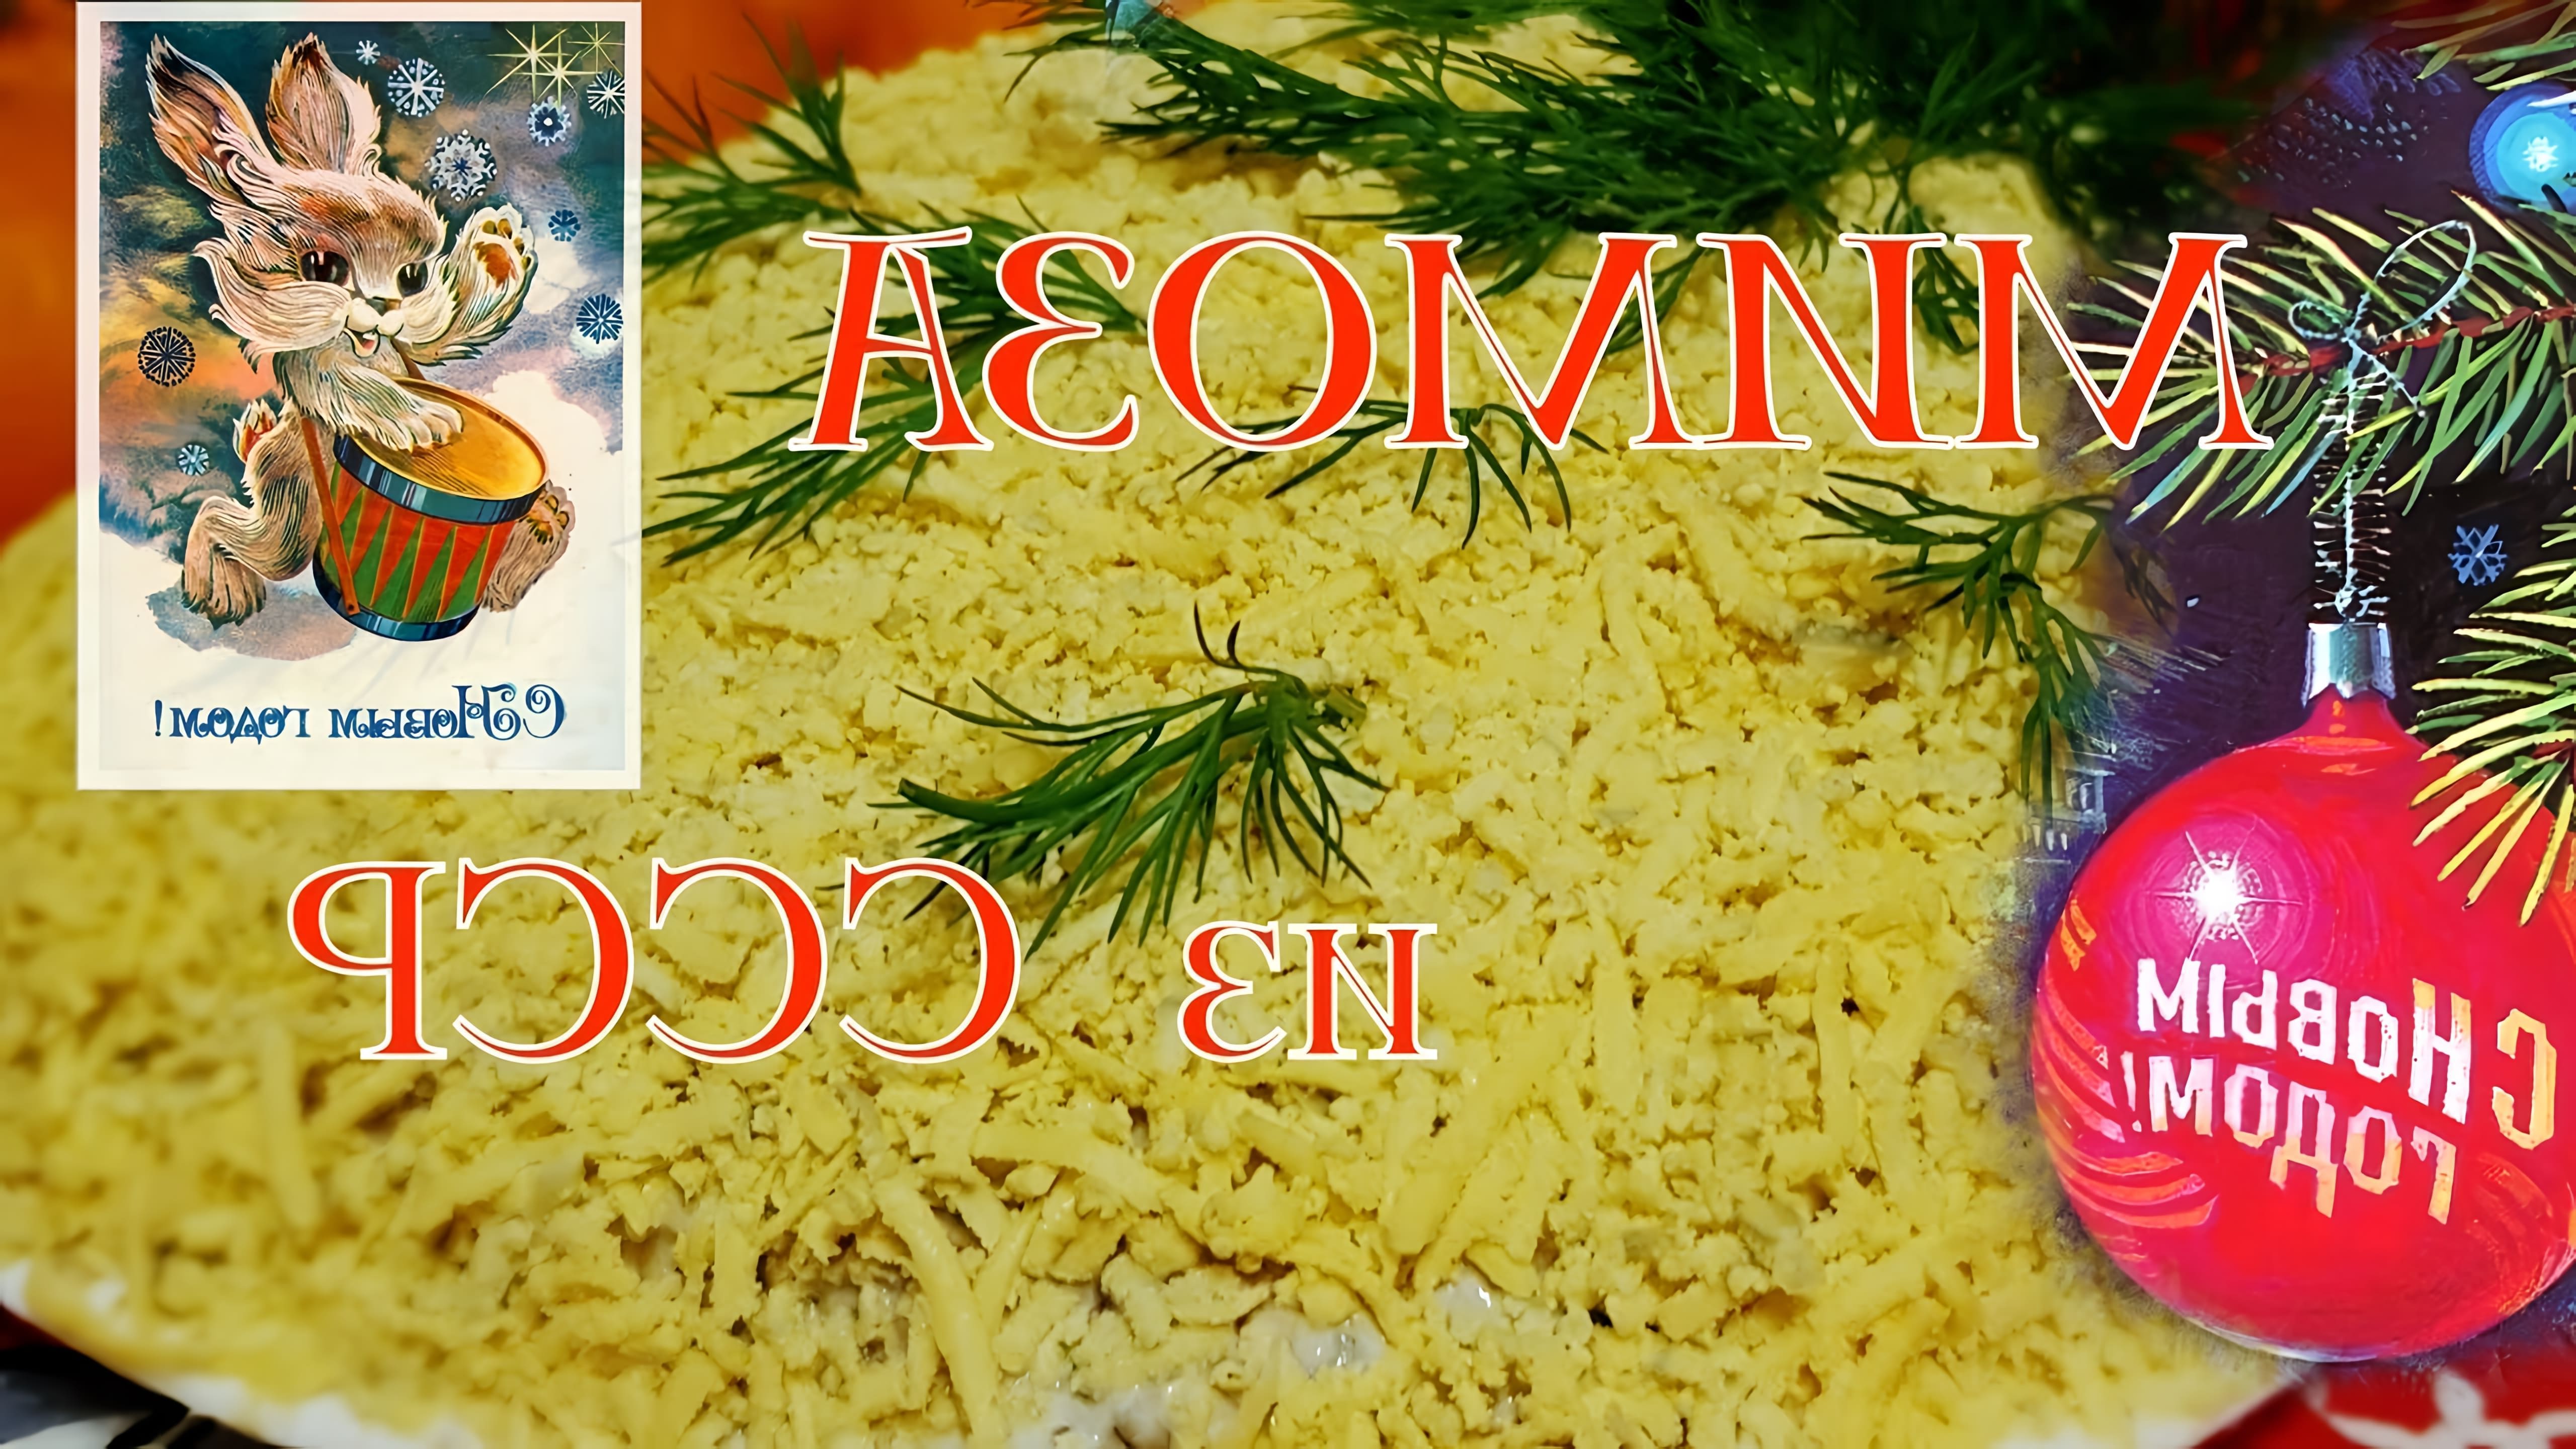 "Рецепт салата "Мимоза" - тот самый из СССР" - это видео-ролик, который представляет собой инструкцию по приготовлению классического салата "Мимоза"